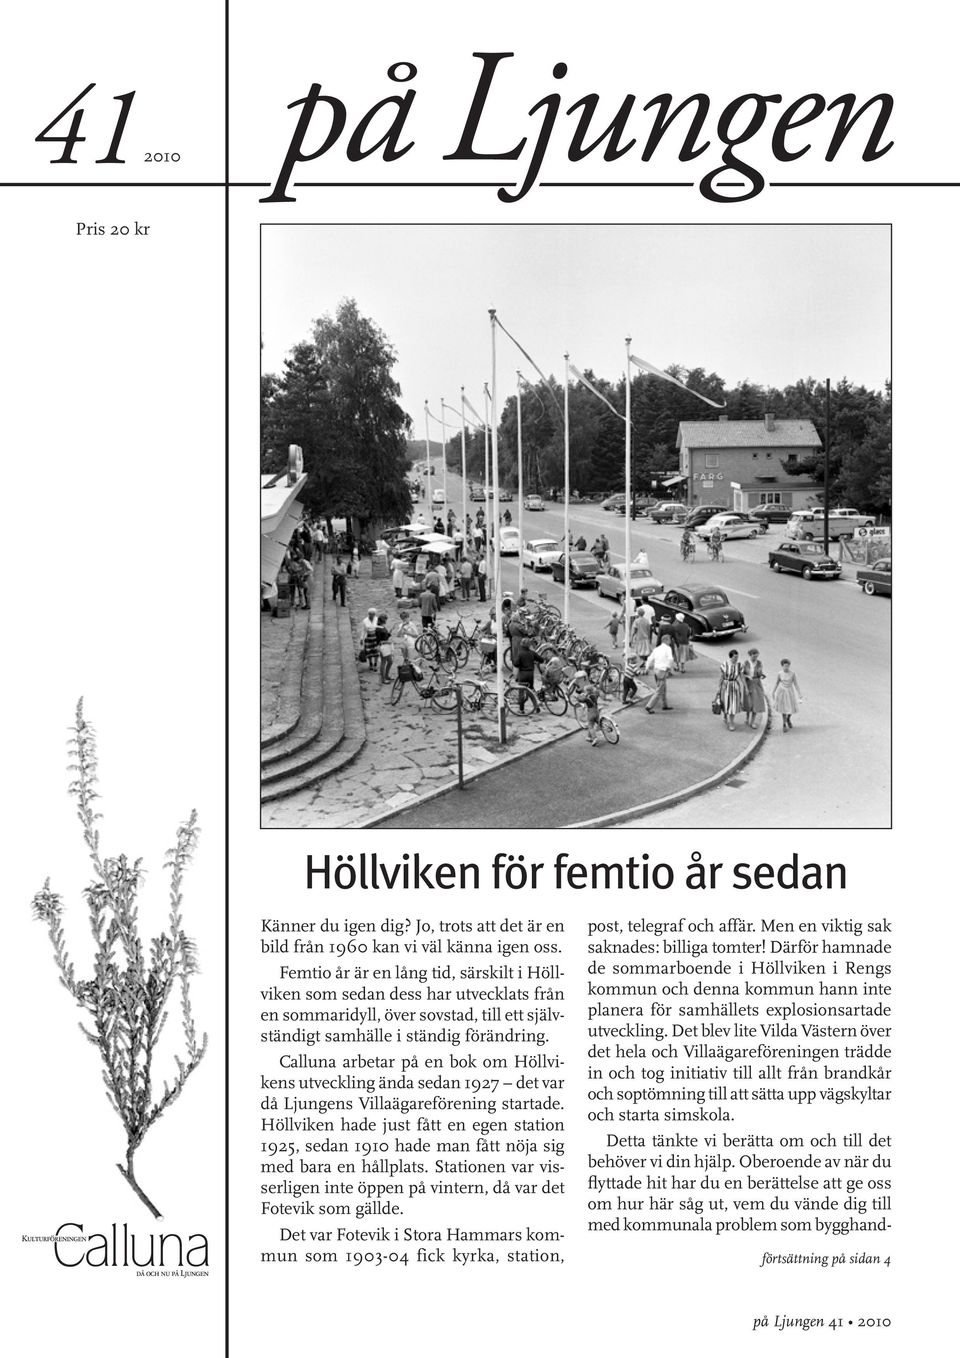 Callua arbetar på e bok om Höllvikes utvecklig äda seda 1927 det var då Ljuges Villaägareföreig startade.